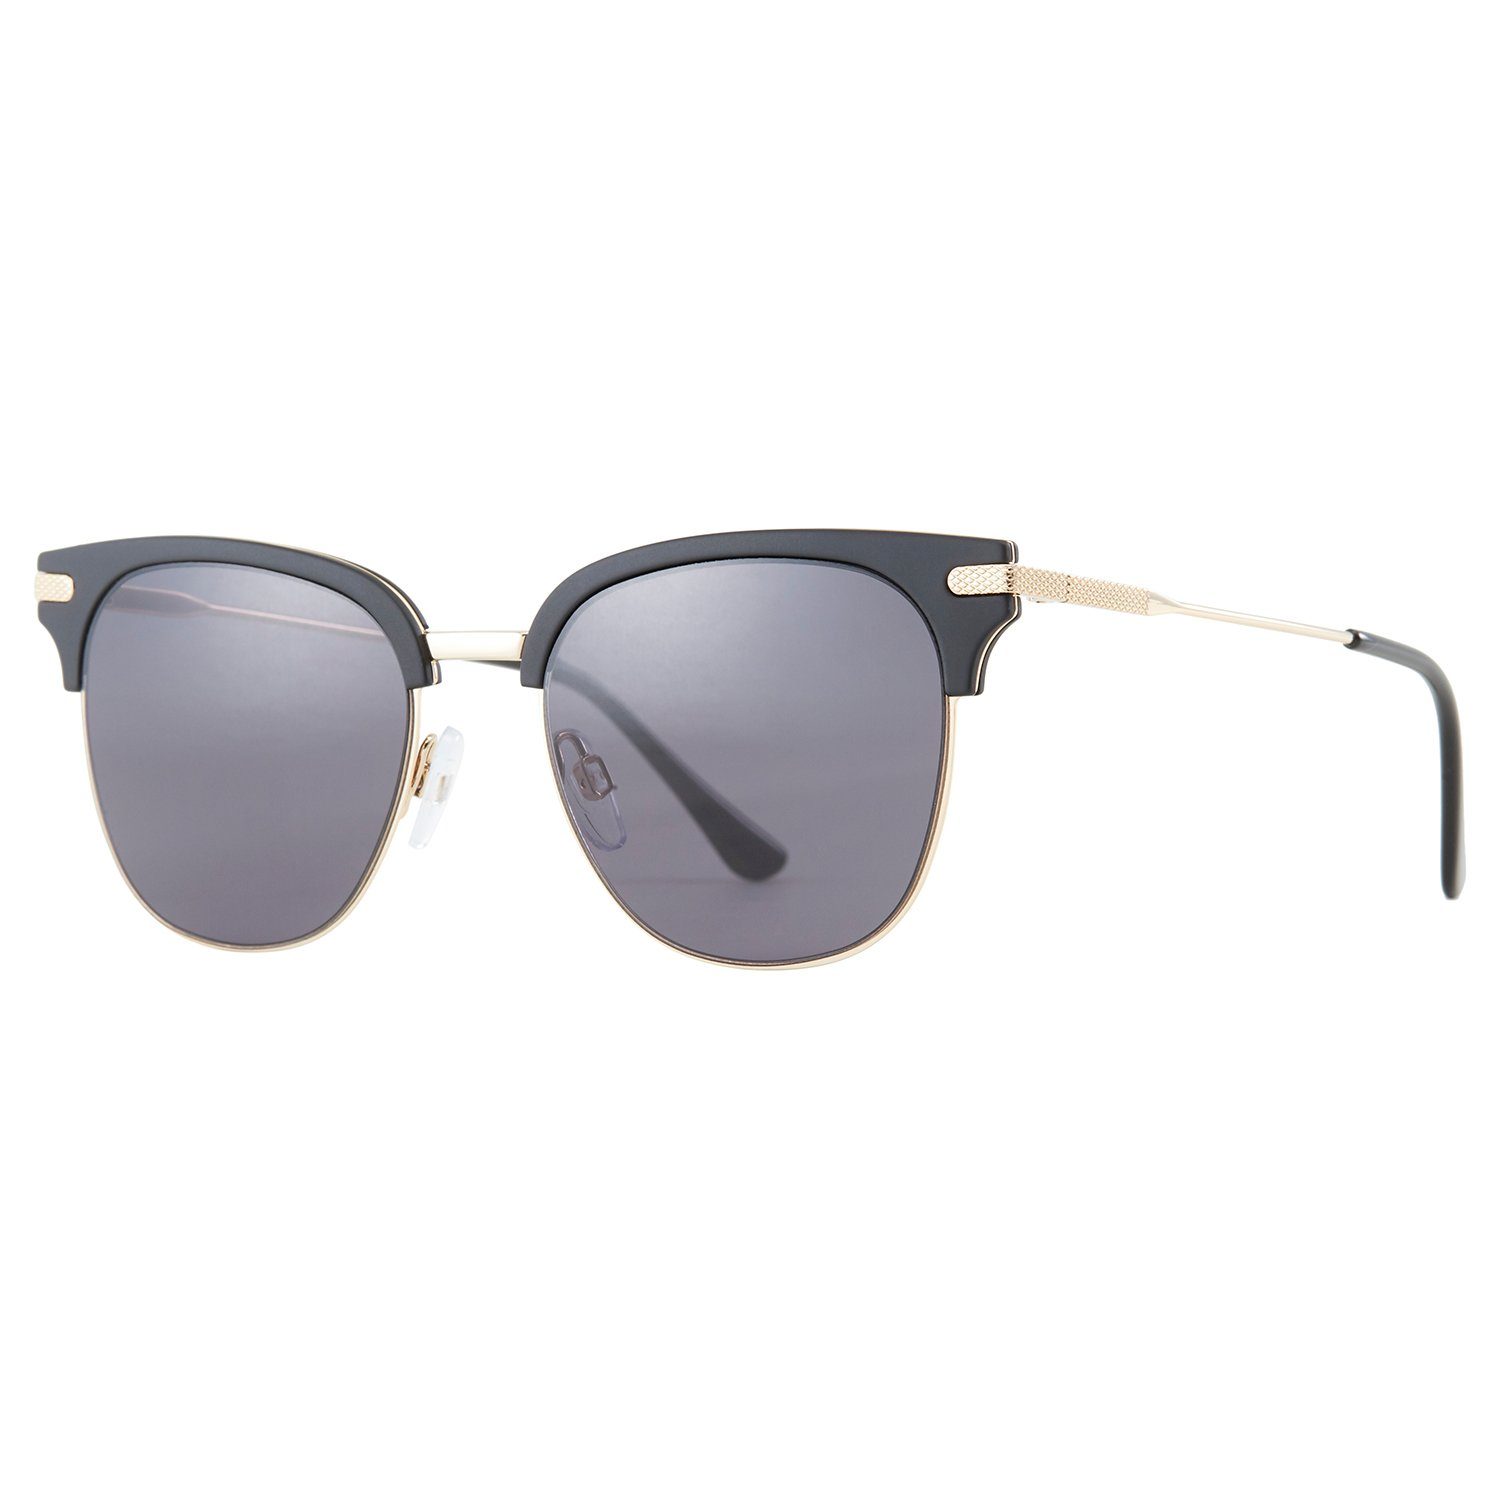 Elegear Sonnenbrille Damen Sonnenbrille Retro Verlaufsglas 100% UV400-Schutz Grau